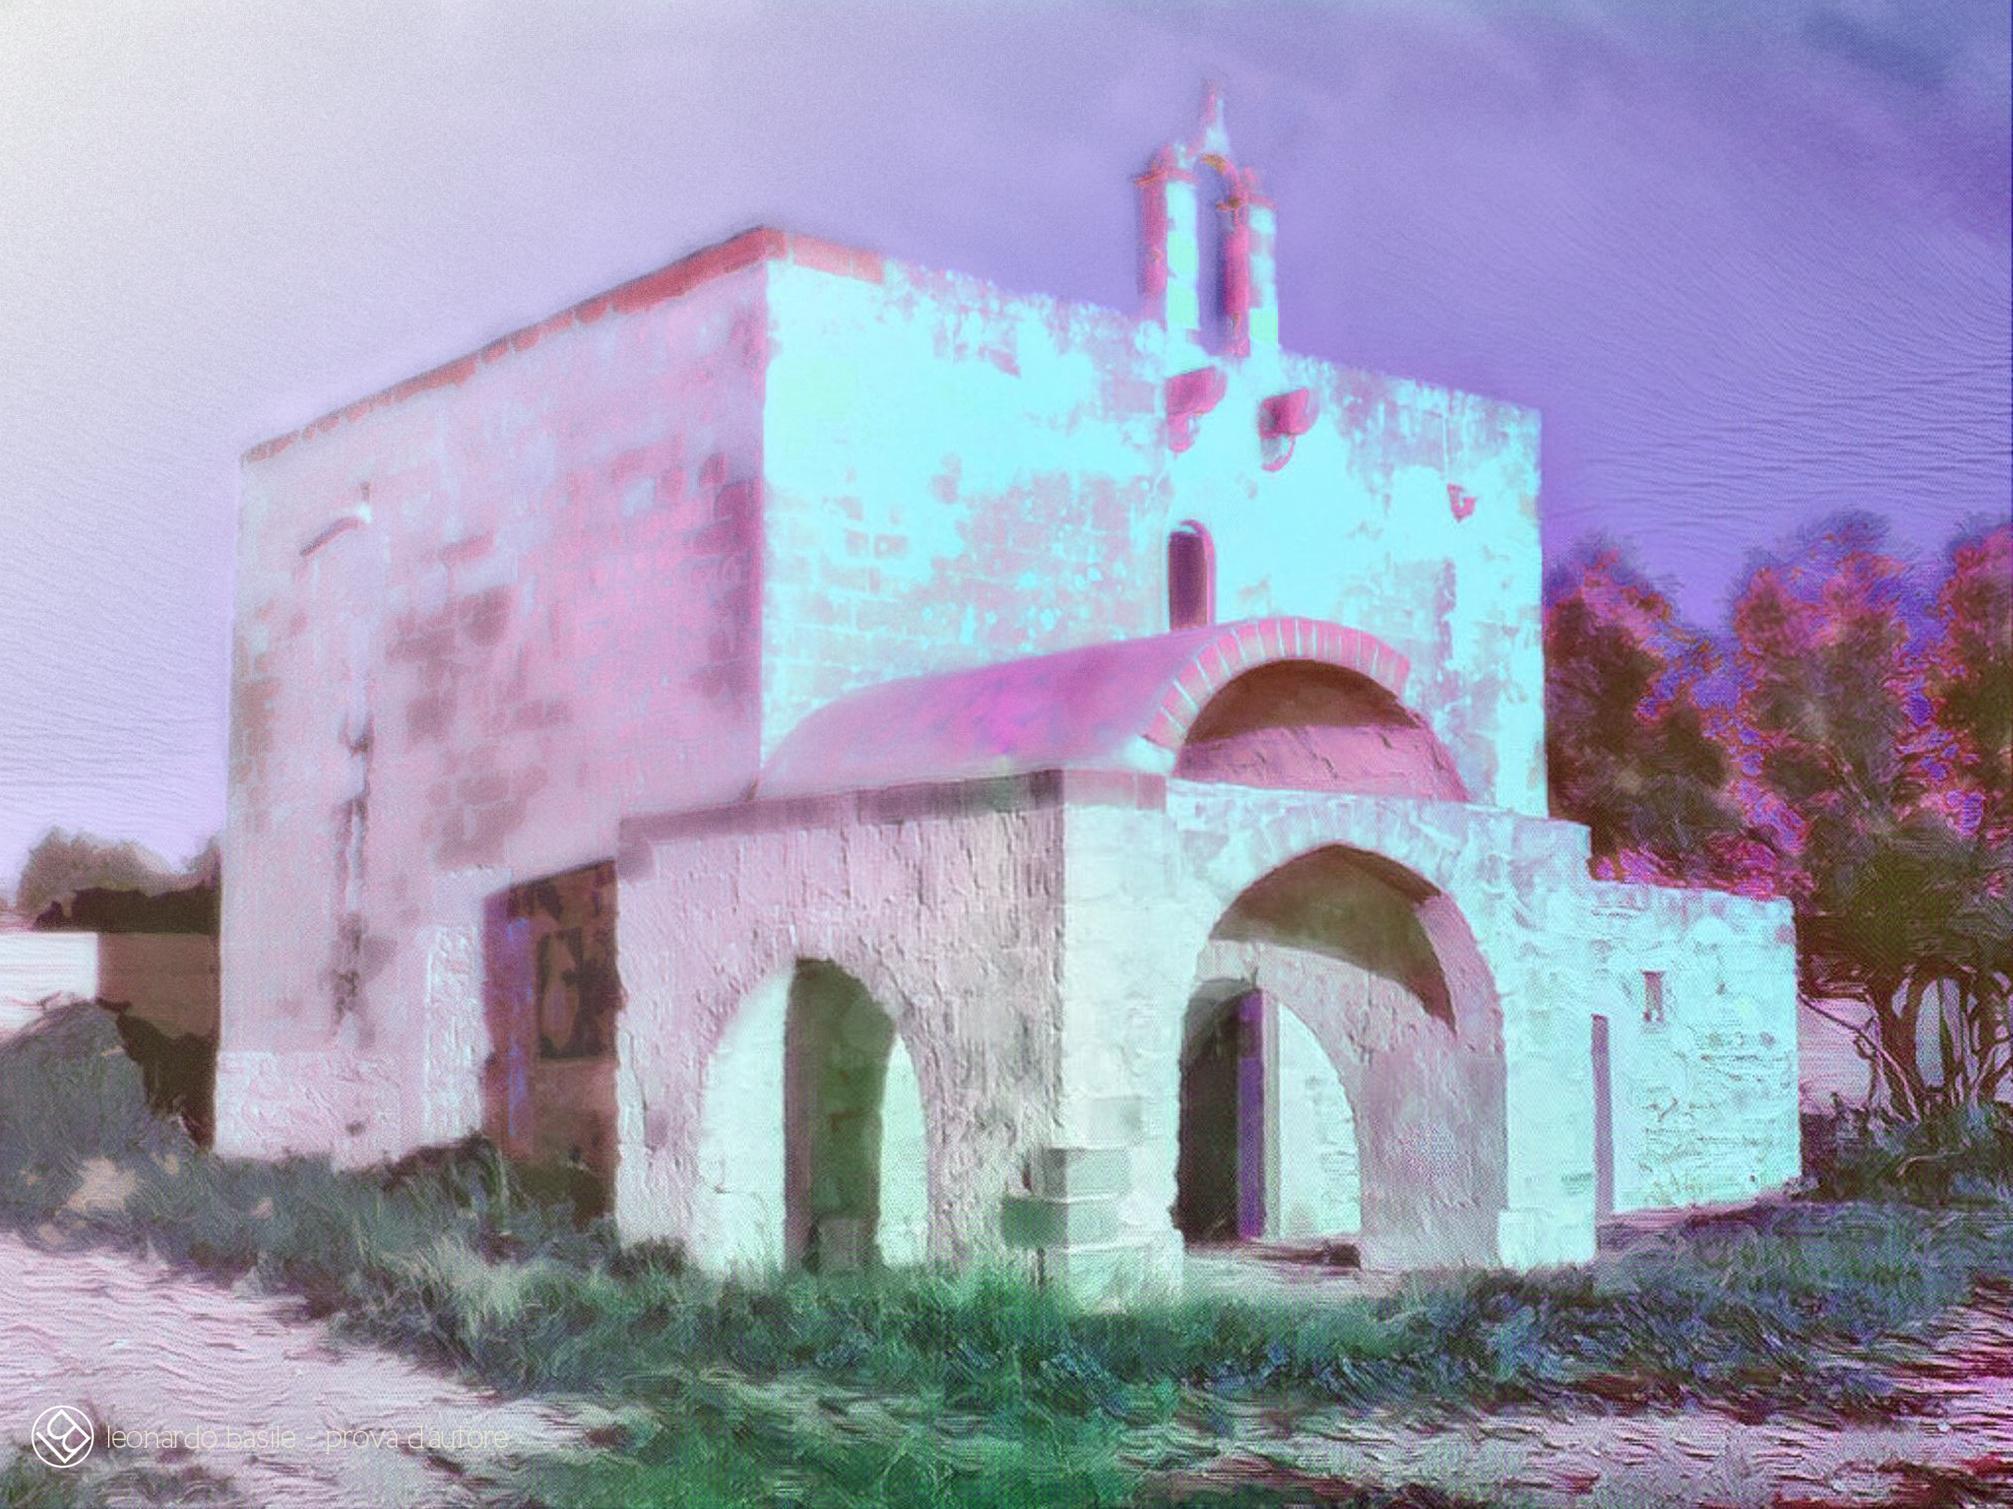 Elaborazione grafica da una fotografia della Chiesa medievale dell'Annunziata di Bari/S.Spirito- 16